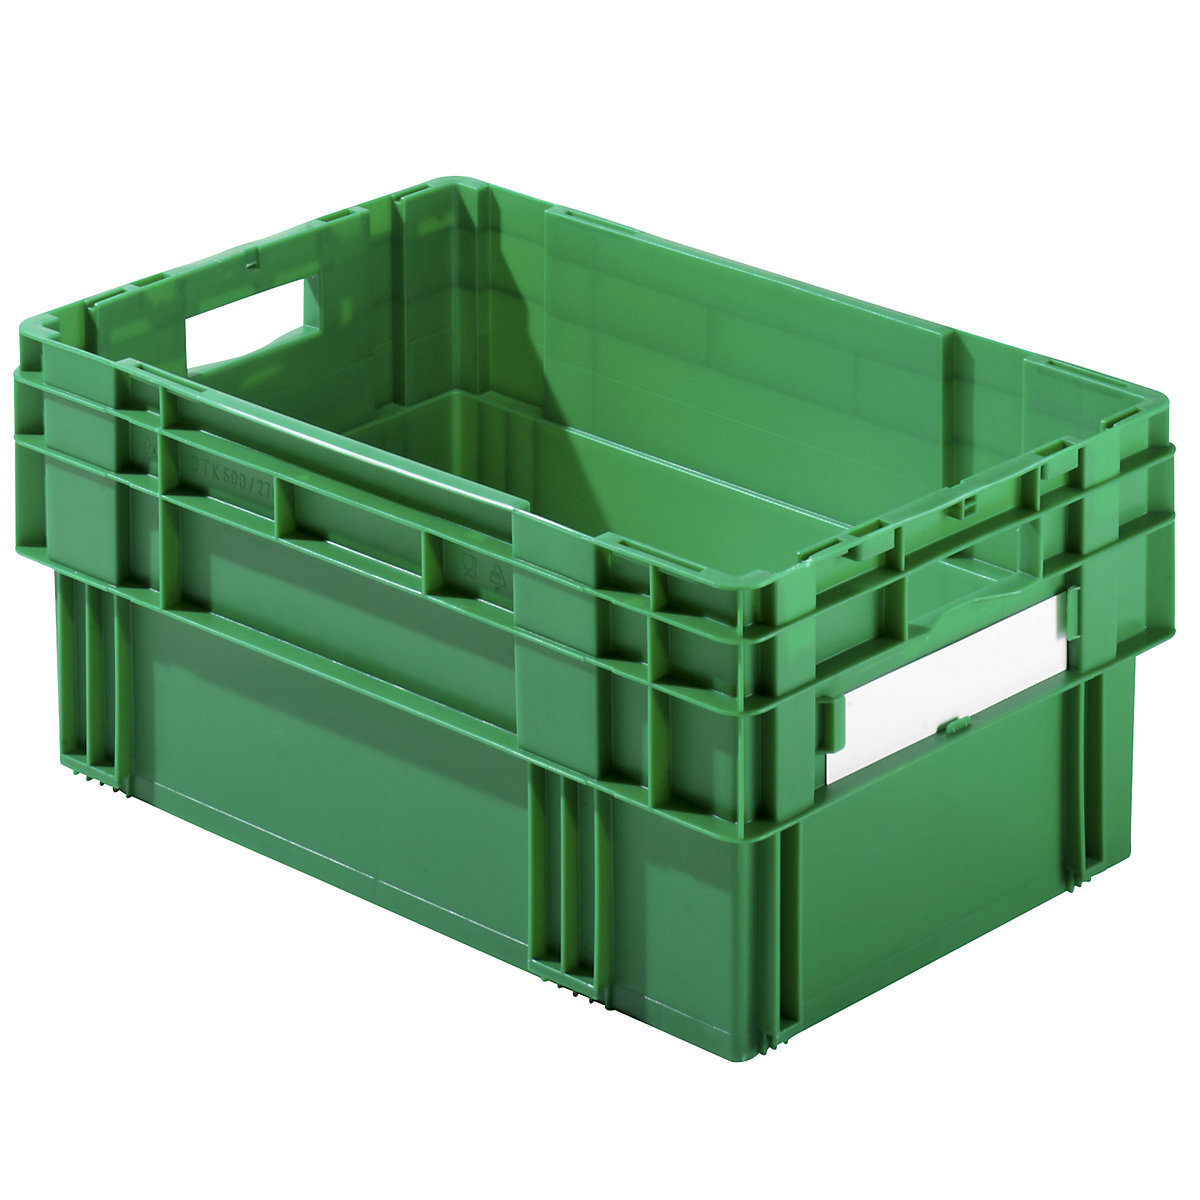 Kutija za slaganje, volumen 49 l, zatvorene stijenke i dno, pak. 4 kom., u zelenoj boji